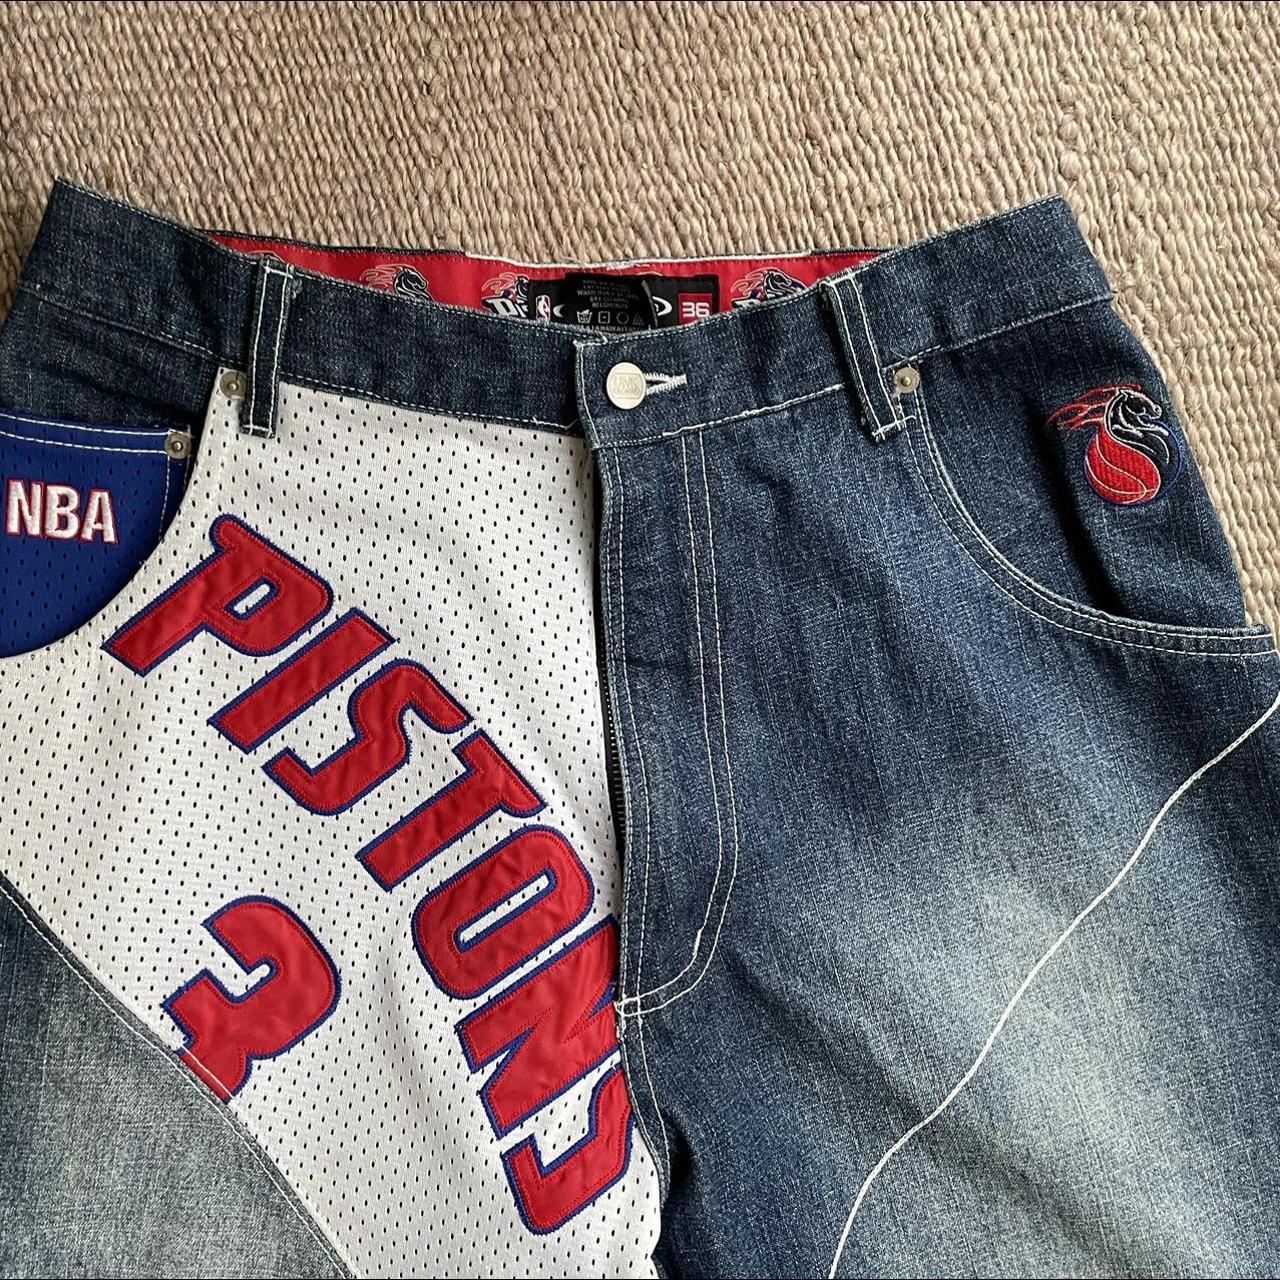 Detroit Pistons Ben Wallace jersey. A bit faded but - Depop